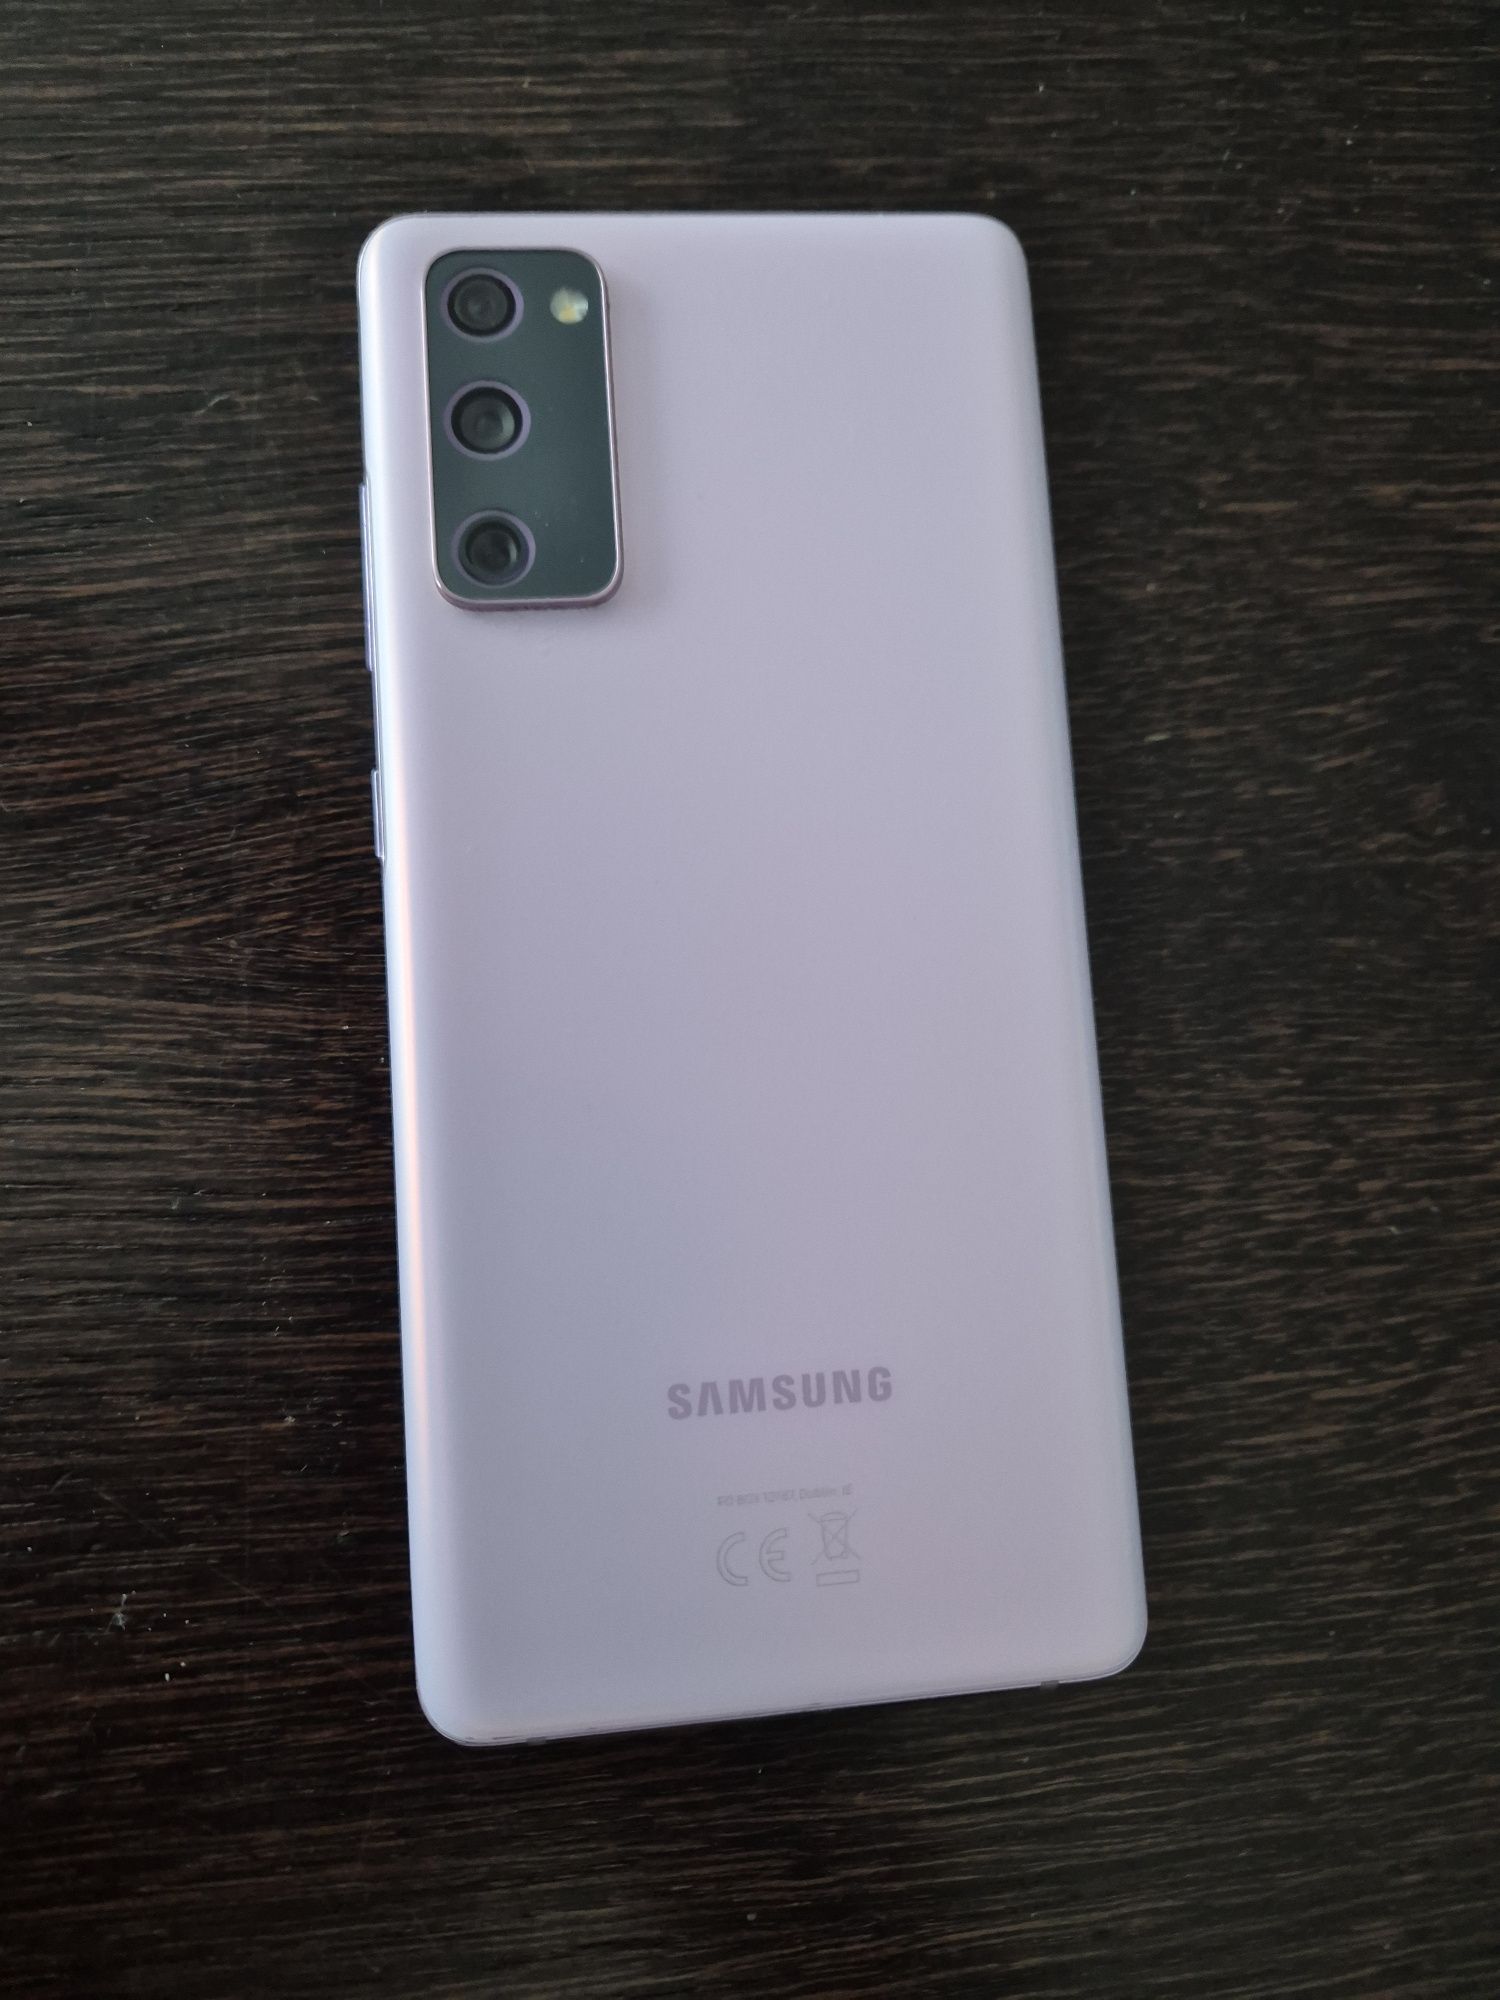 Samsung galaxy s20 fe 128 GB gwarancja